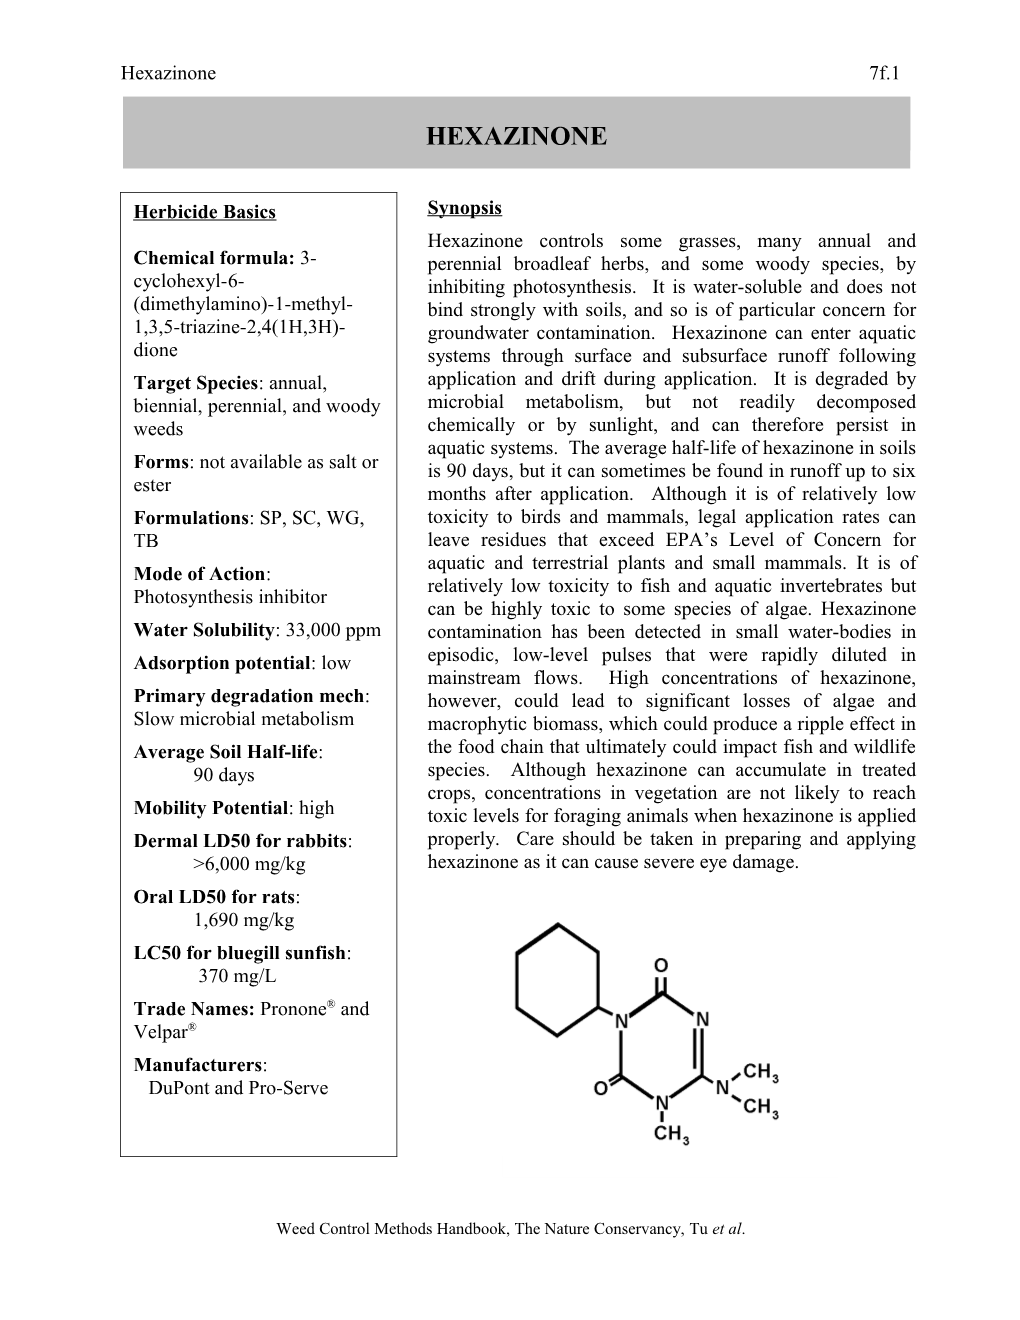 Chemical Formula: 3-Cyclohexyl-6-(Dimethylamino)-1-Methyl-1,3,5-Triazine-2,4 (1H,3H)-Dione